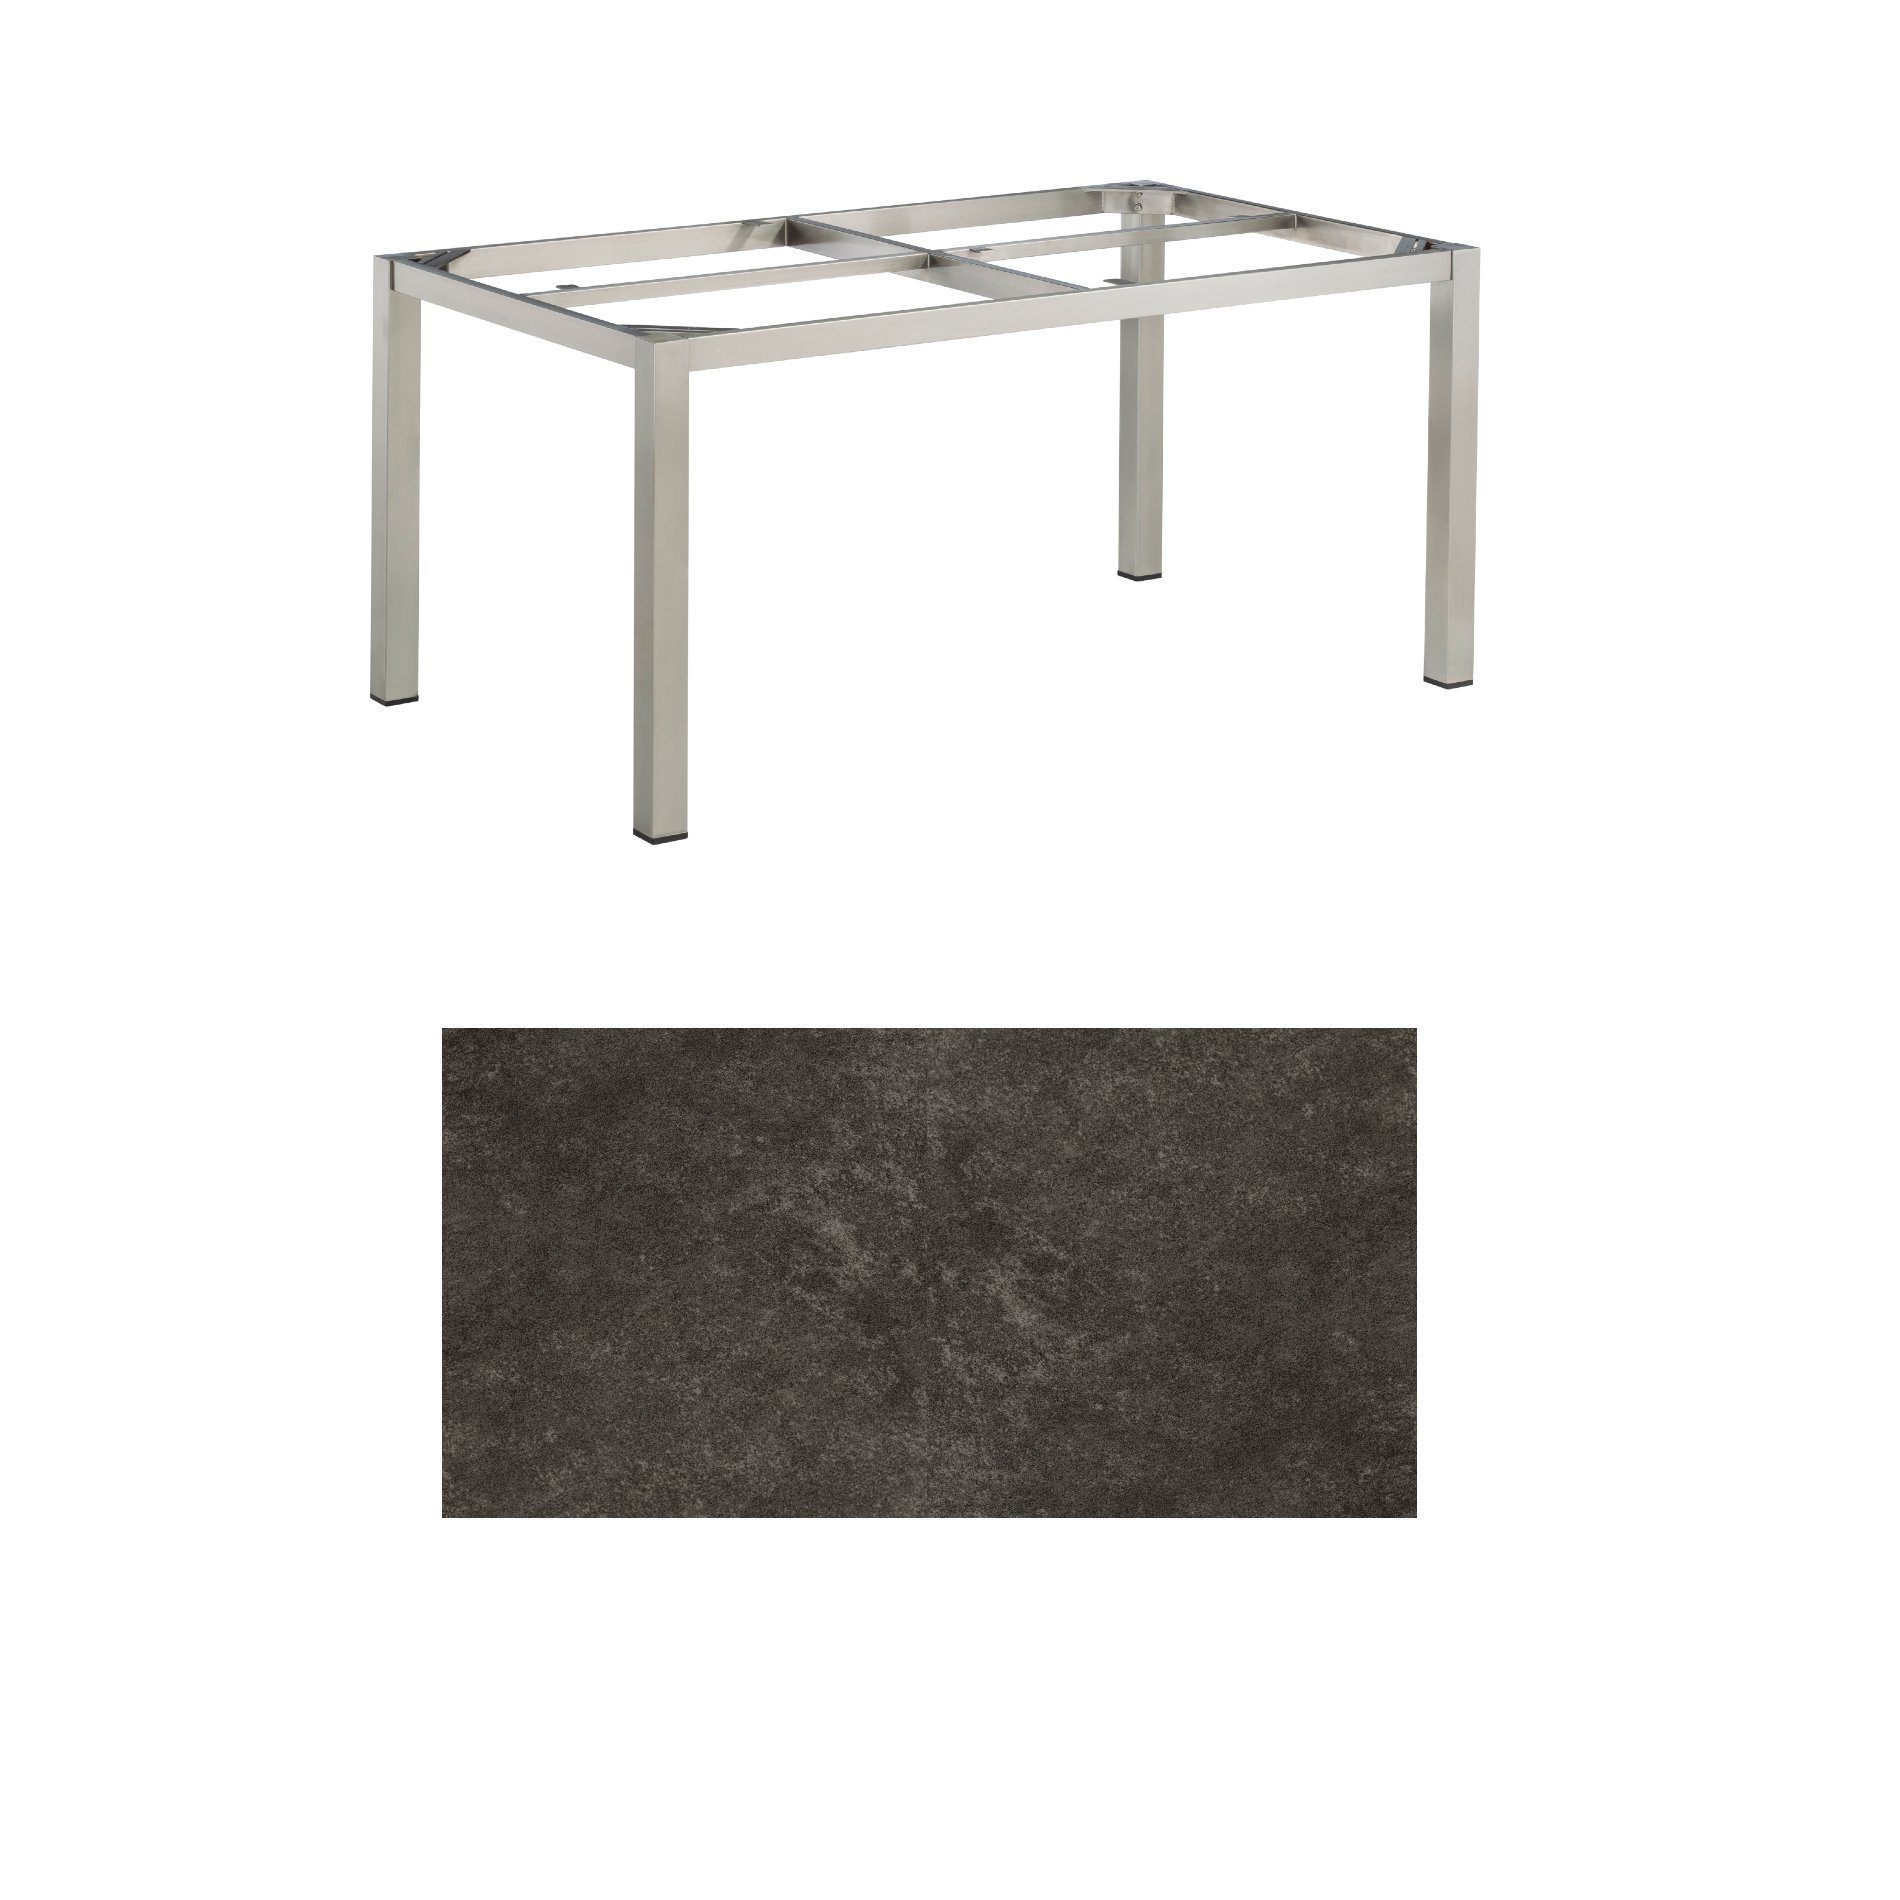 Kettler Gartentisch, Tischgestell 160x95cm "Cubic", Edelstahl, mit Tischplatte Keramik anthrazit